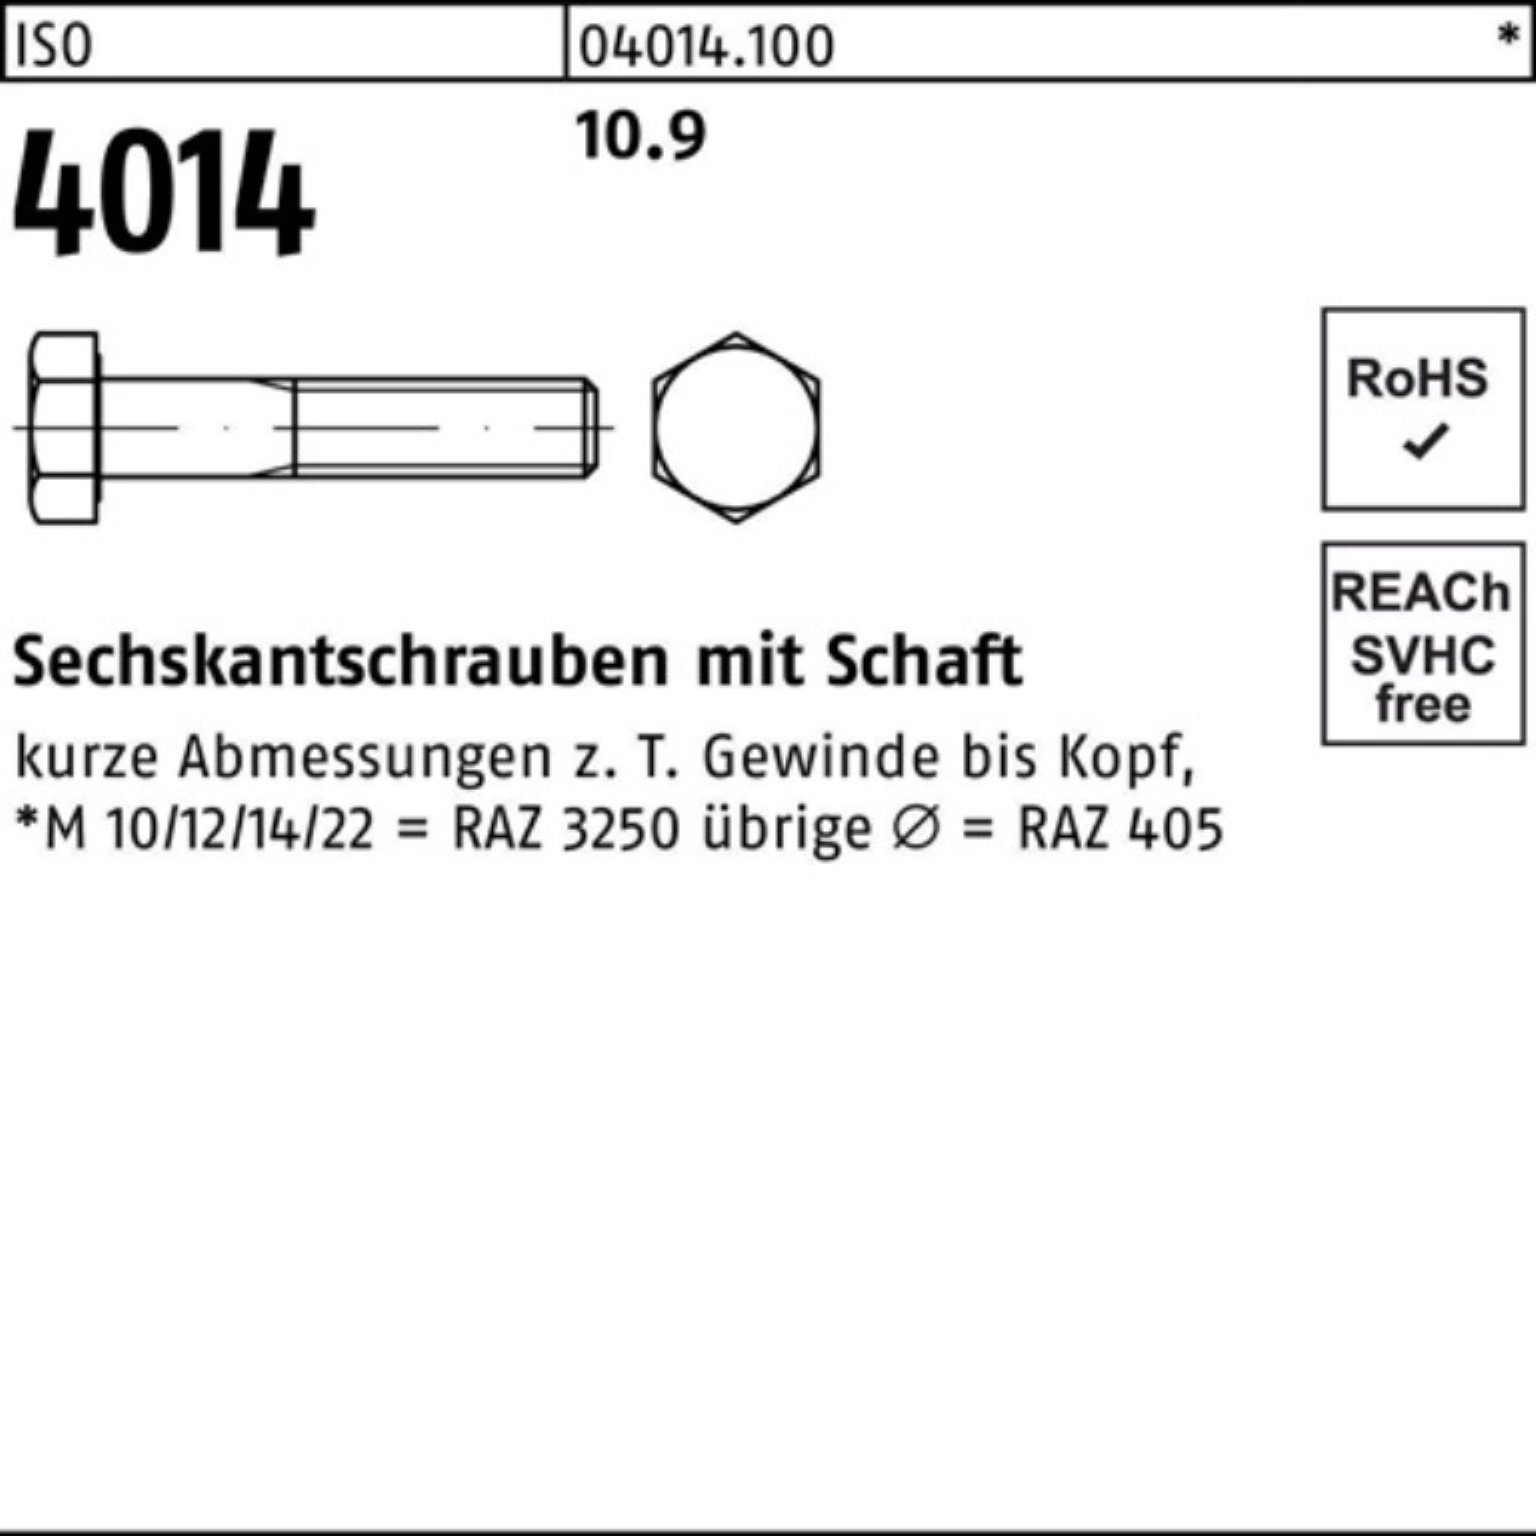 4014 Sechskantschraube 60 10.9 Sechskantschraube Schaft 100er ISO Bufab M10x Pack Stück 100 I